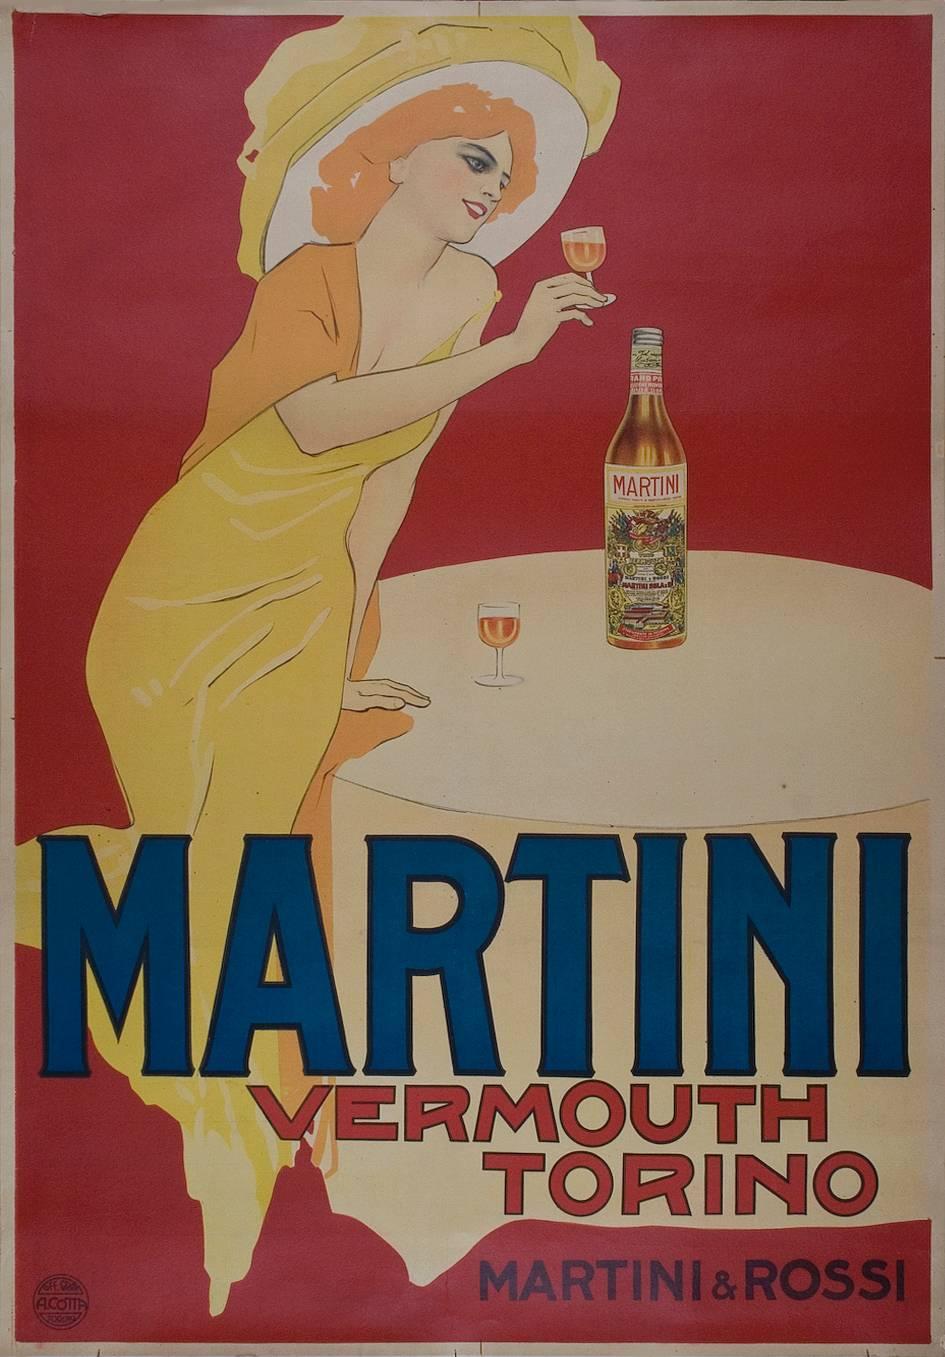 An Italian stone lithograph poster advertising &quot;Martini Vermouth Torino&quot; by Marcello Dudovich, circa 1910. Martini is a brand of Italian vermouth named for the Martini &amp; Rossi Distilleria Nazionale di Spirito di Vino in Turin. The